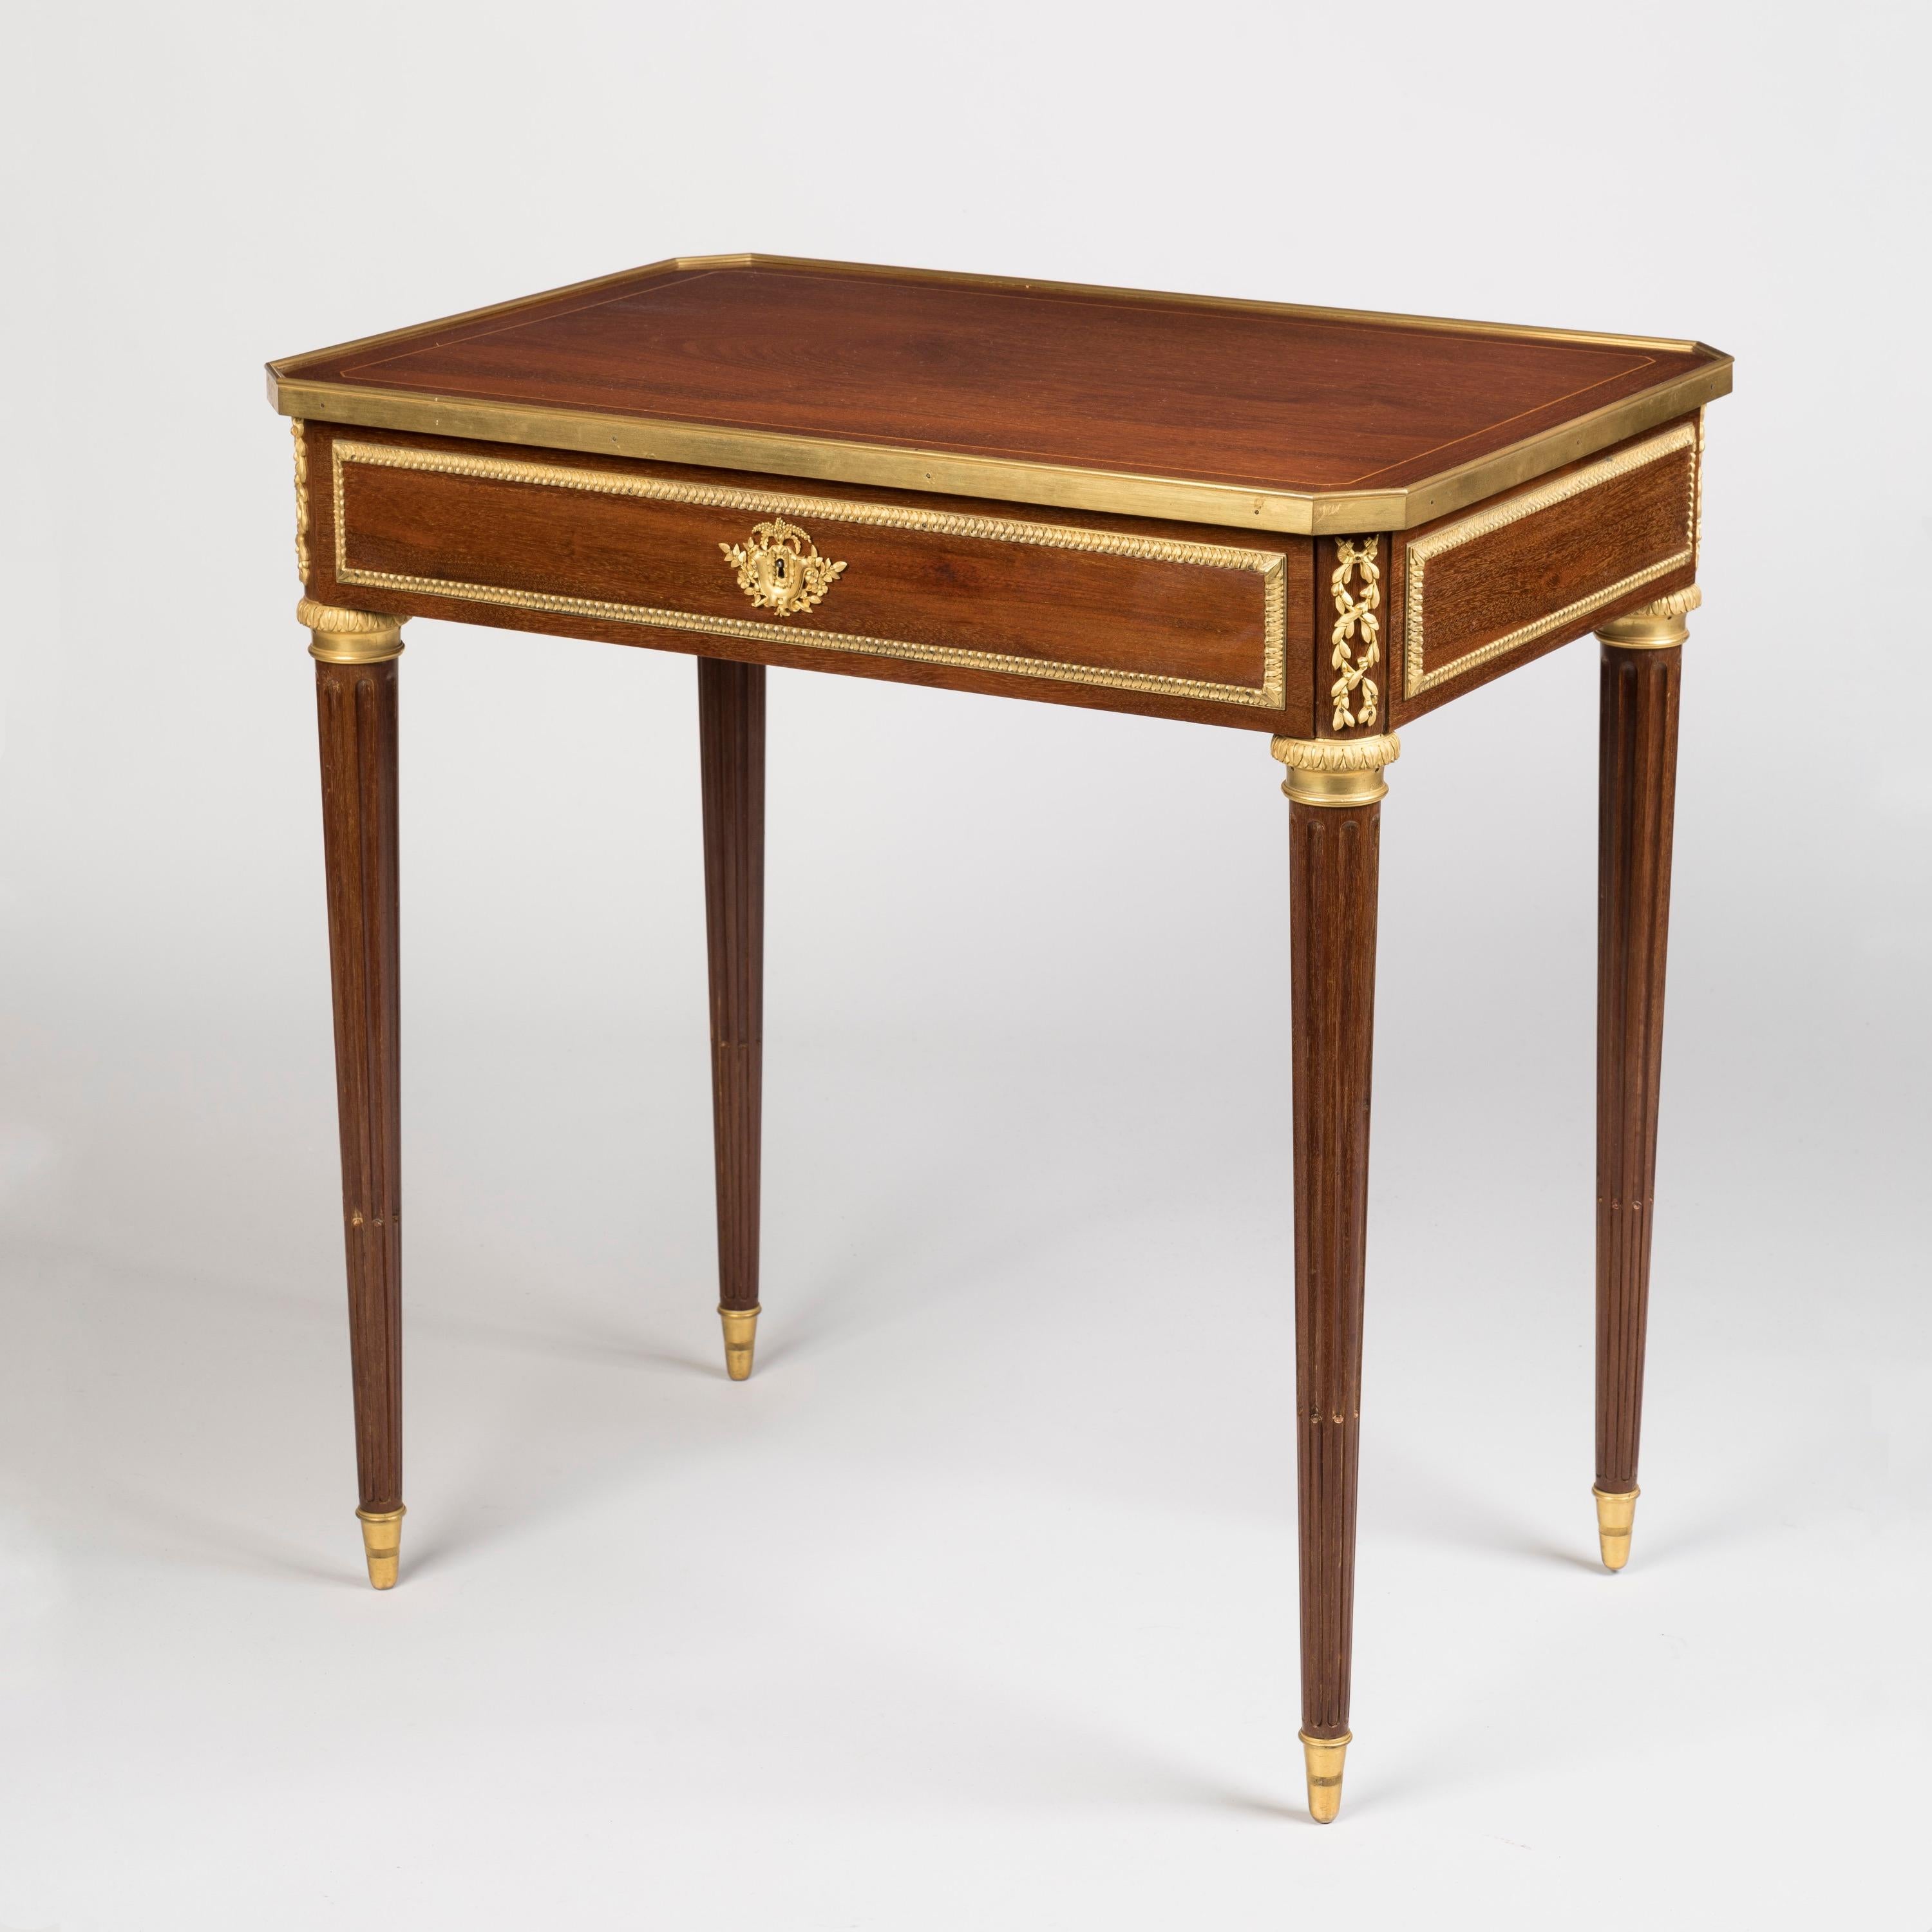 Ein Schreibtisch im Stil Louis XVI
Von Lexcellent aus Paris

Der mahagonifurnierte Schreibtisch steht auf spitz zulaufenden, kannelierten Beinen mit bronzenen Säbeln und Kapitellen. Die Schreibfläche ist mit Buchsbaumbordüren, Messingeinfassungen